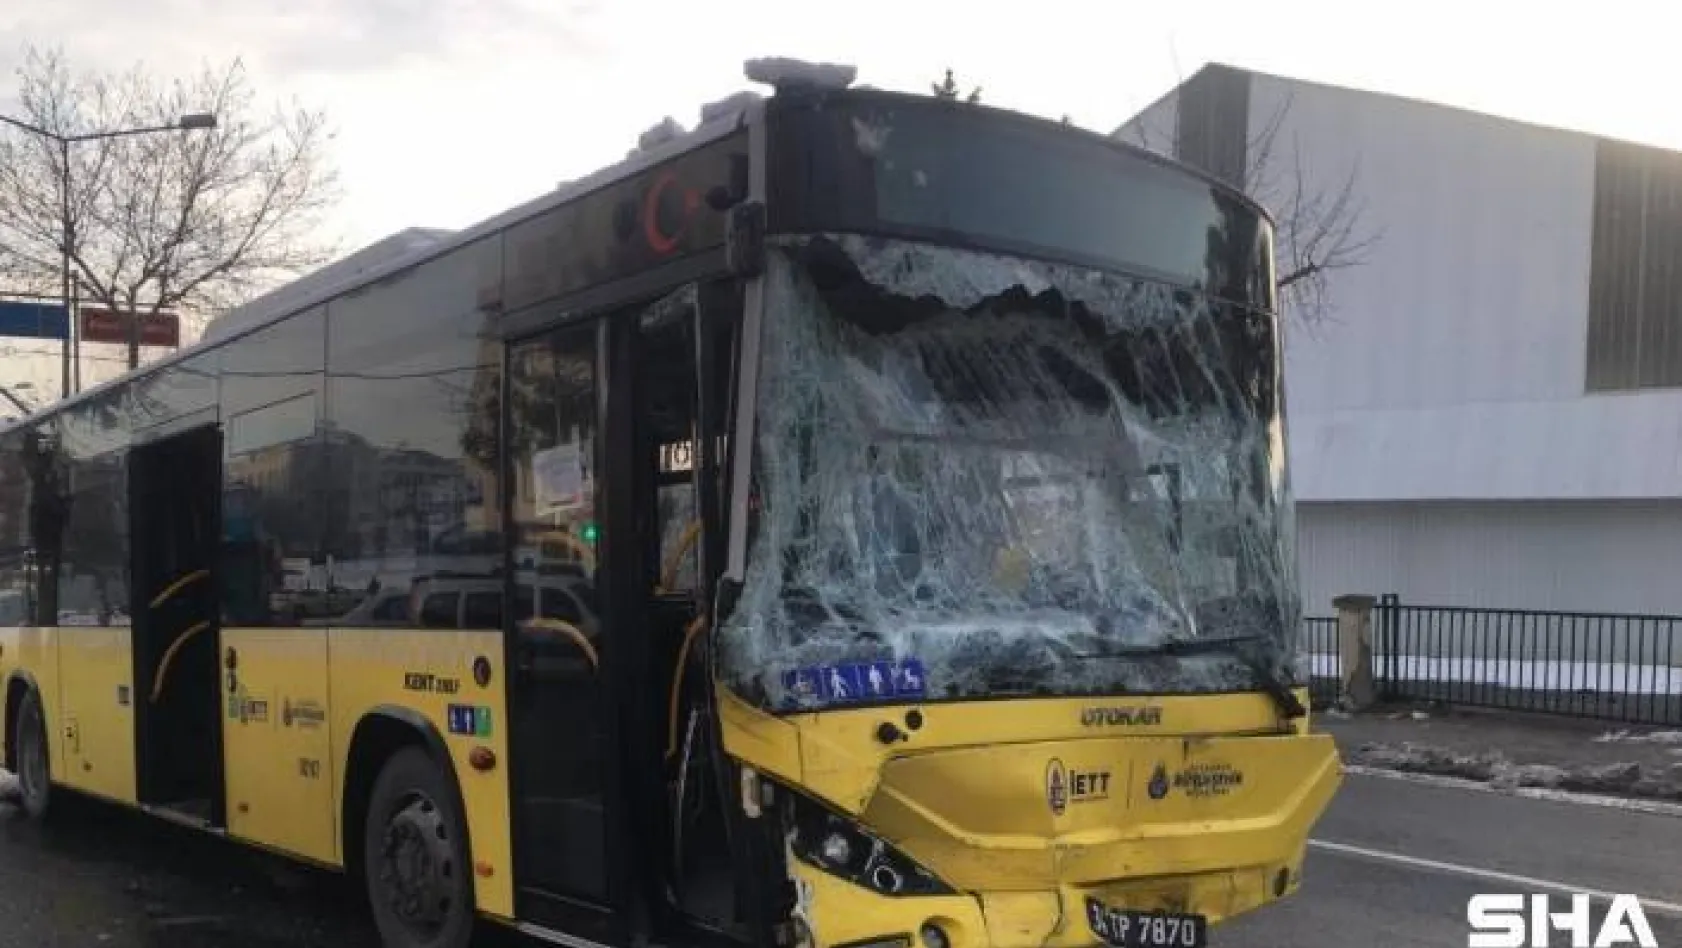 İstanbul Sultanbeyli'de İETT otobüsüyle servis minibüsü çarpıştı. Kazada 7 kişi yaralanırken olay yerine çok sayıda acil servis ekibi sevk edildi.